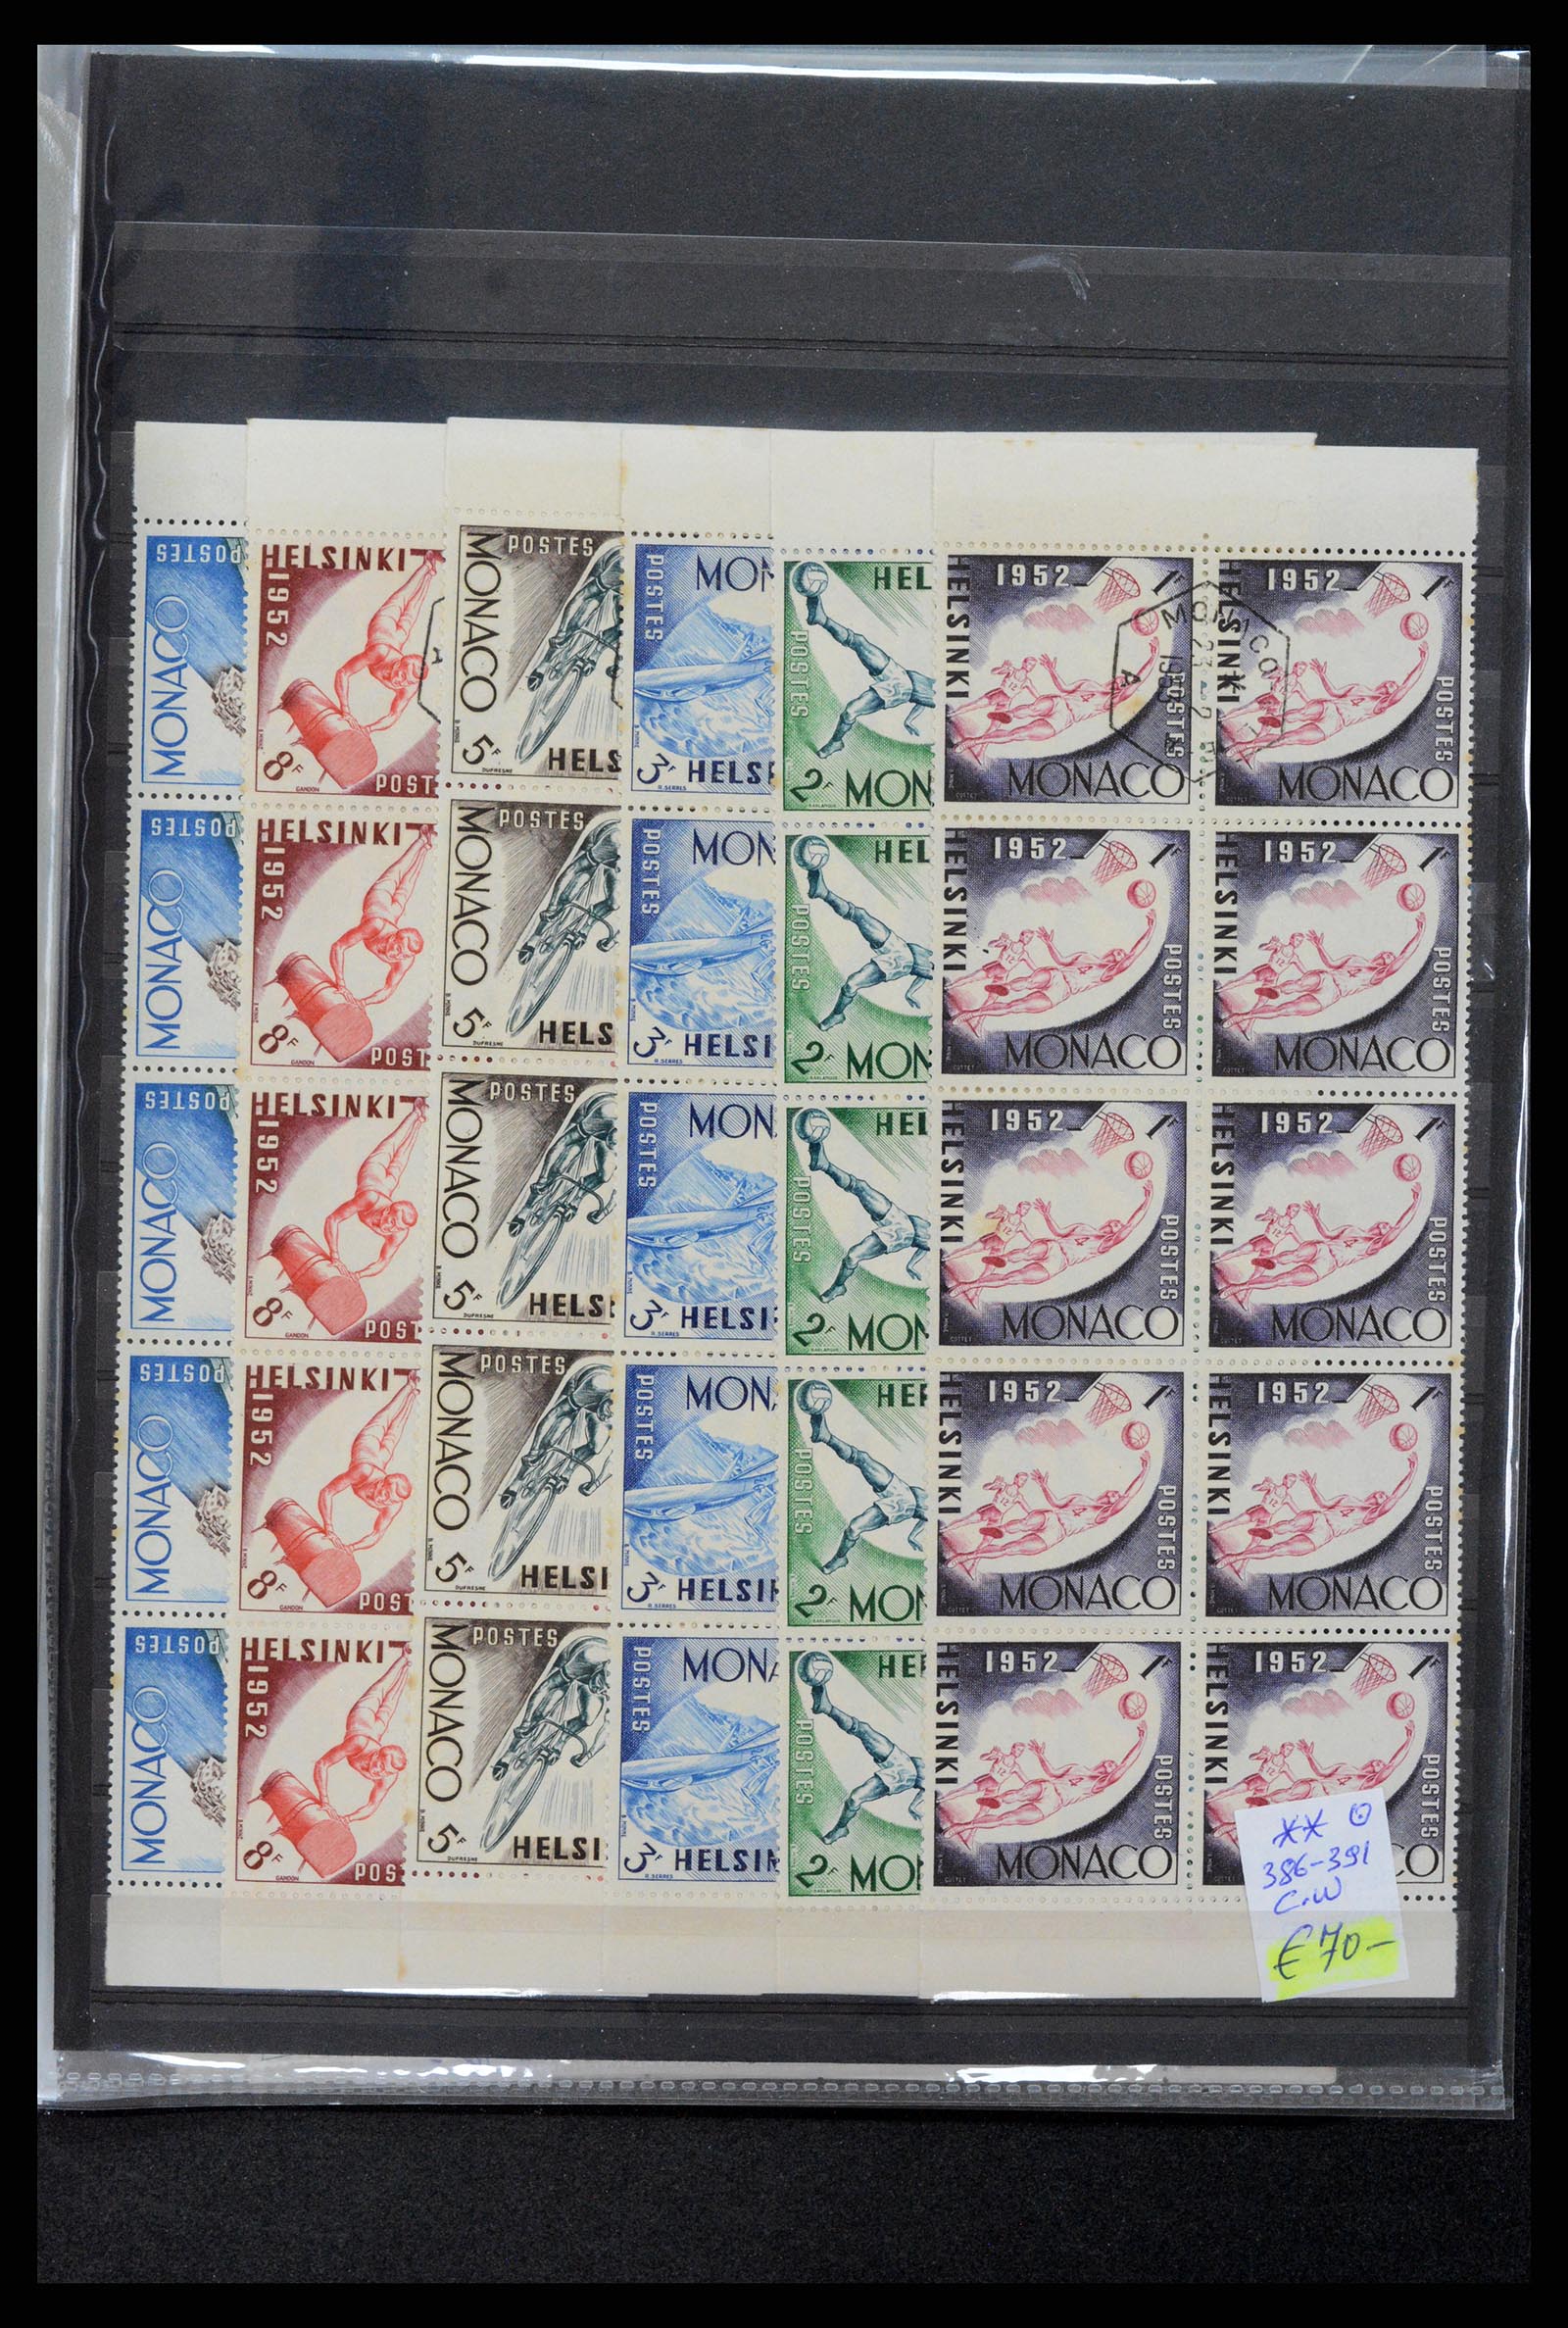 37984 018 - Postzegelverzameling 37984 Monaco betere uitgaven 1942-1982.